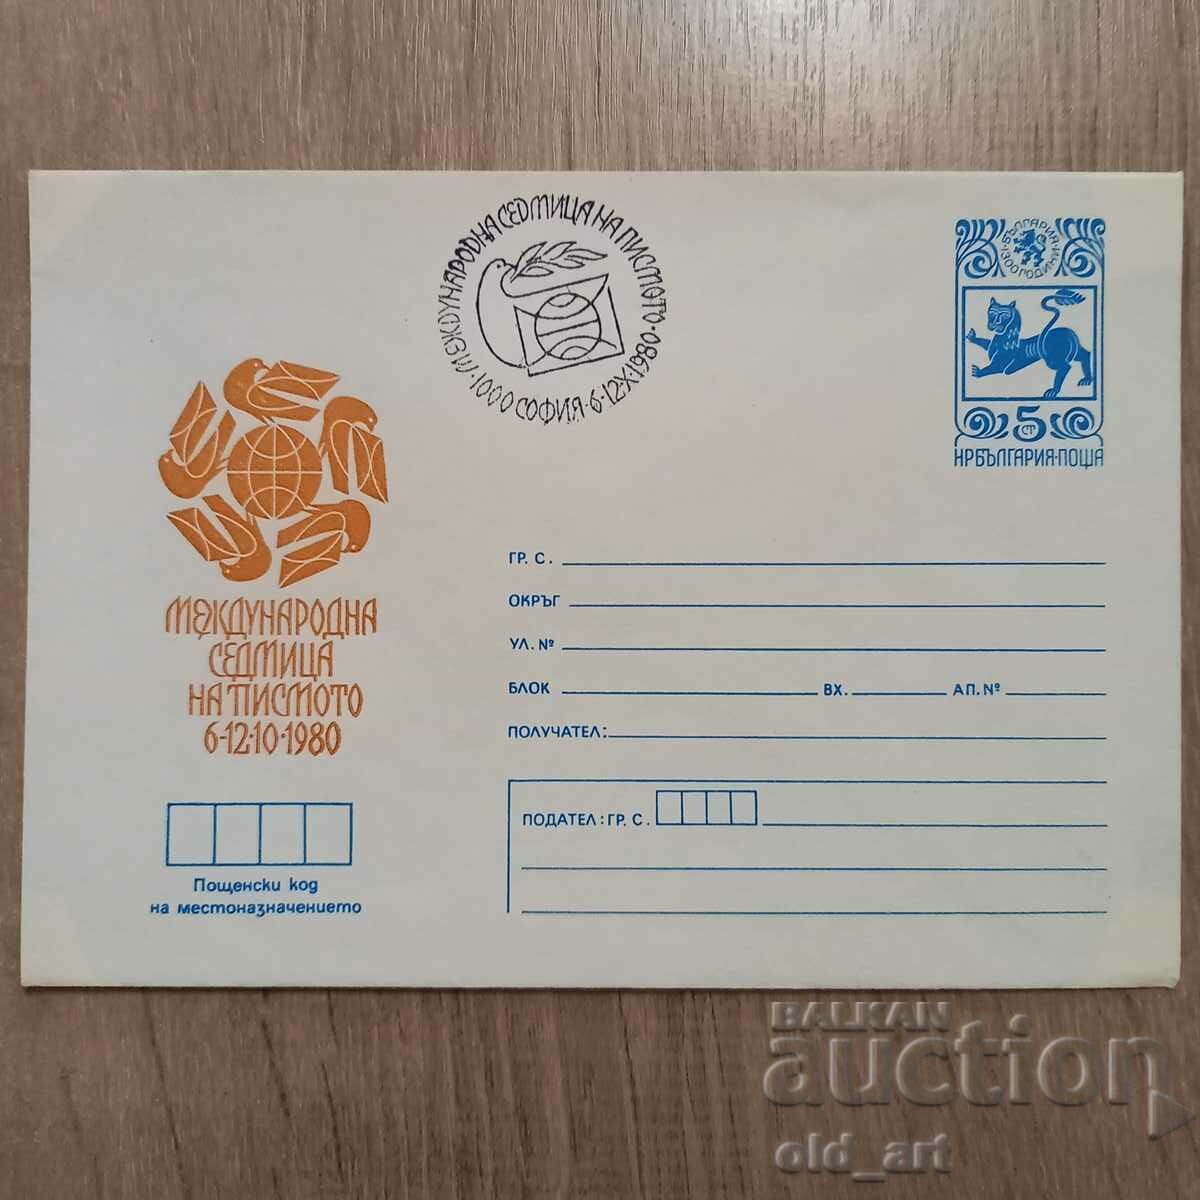 Mailing envelope - International Letter Week